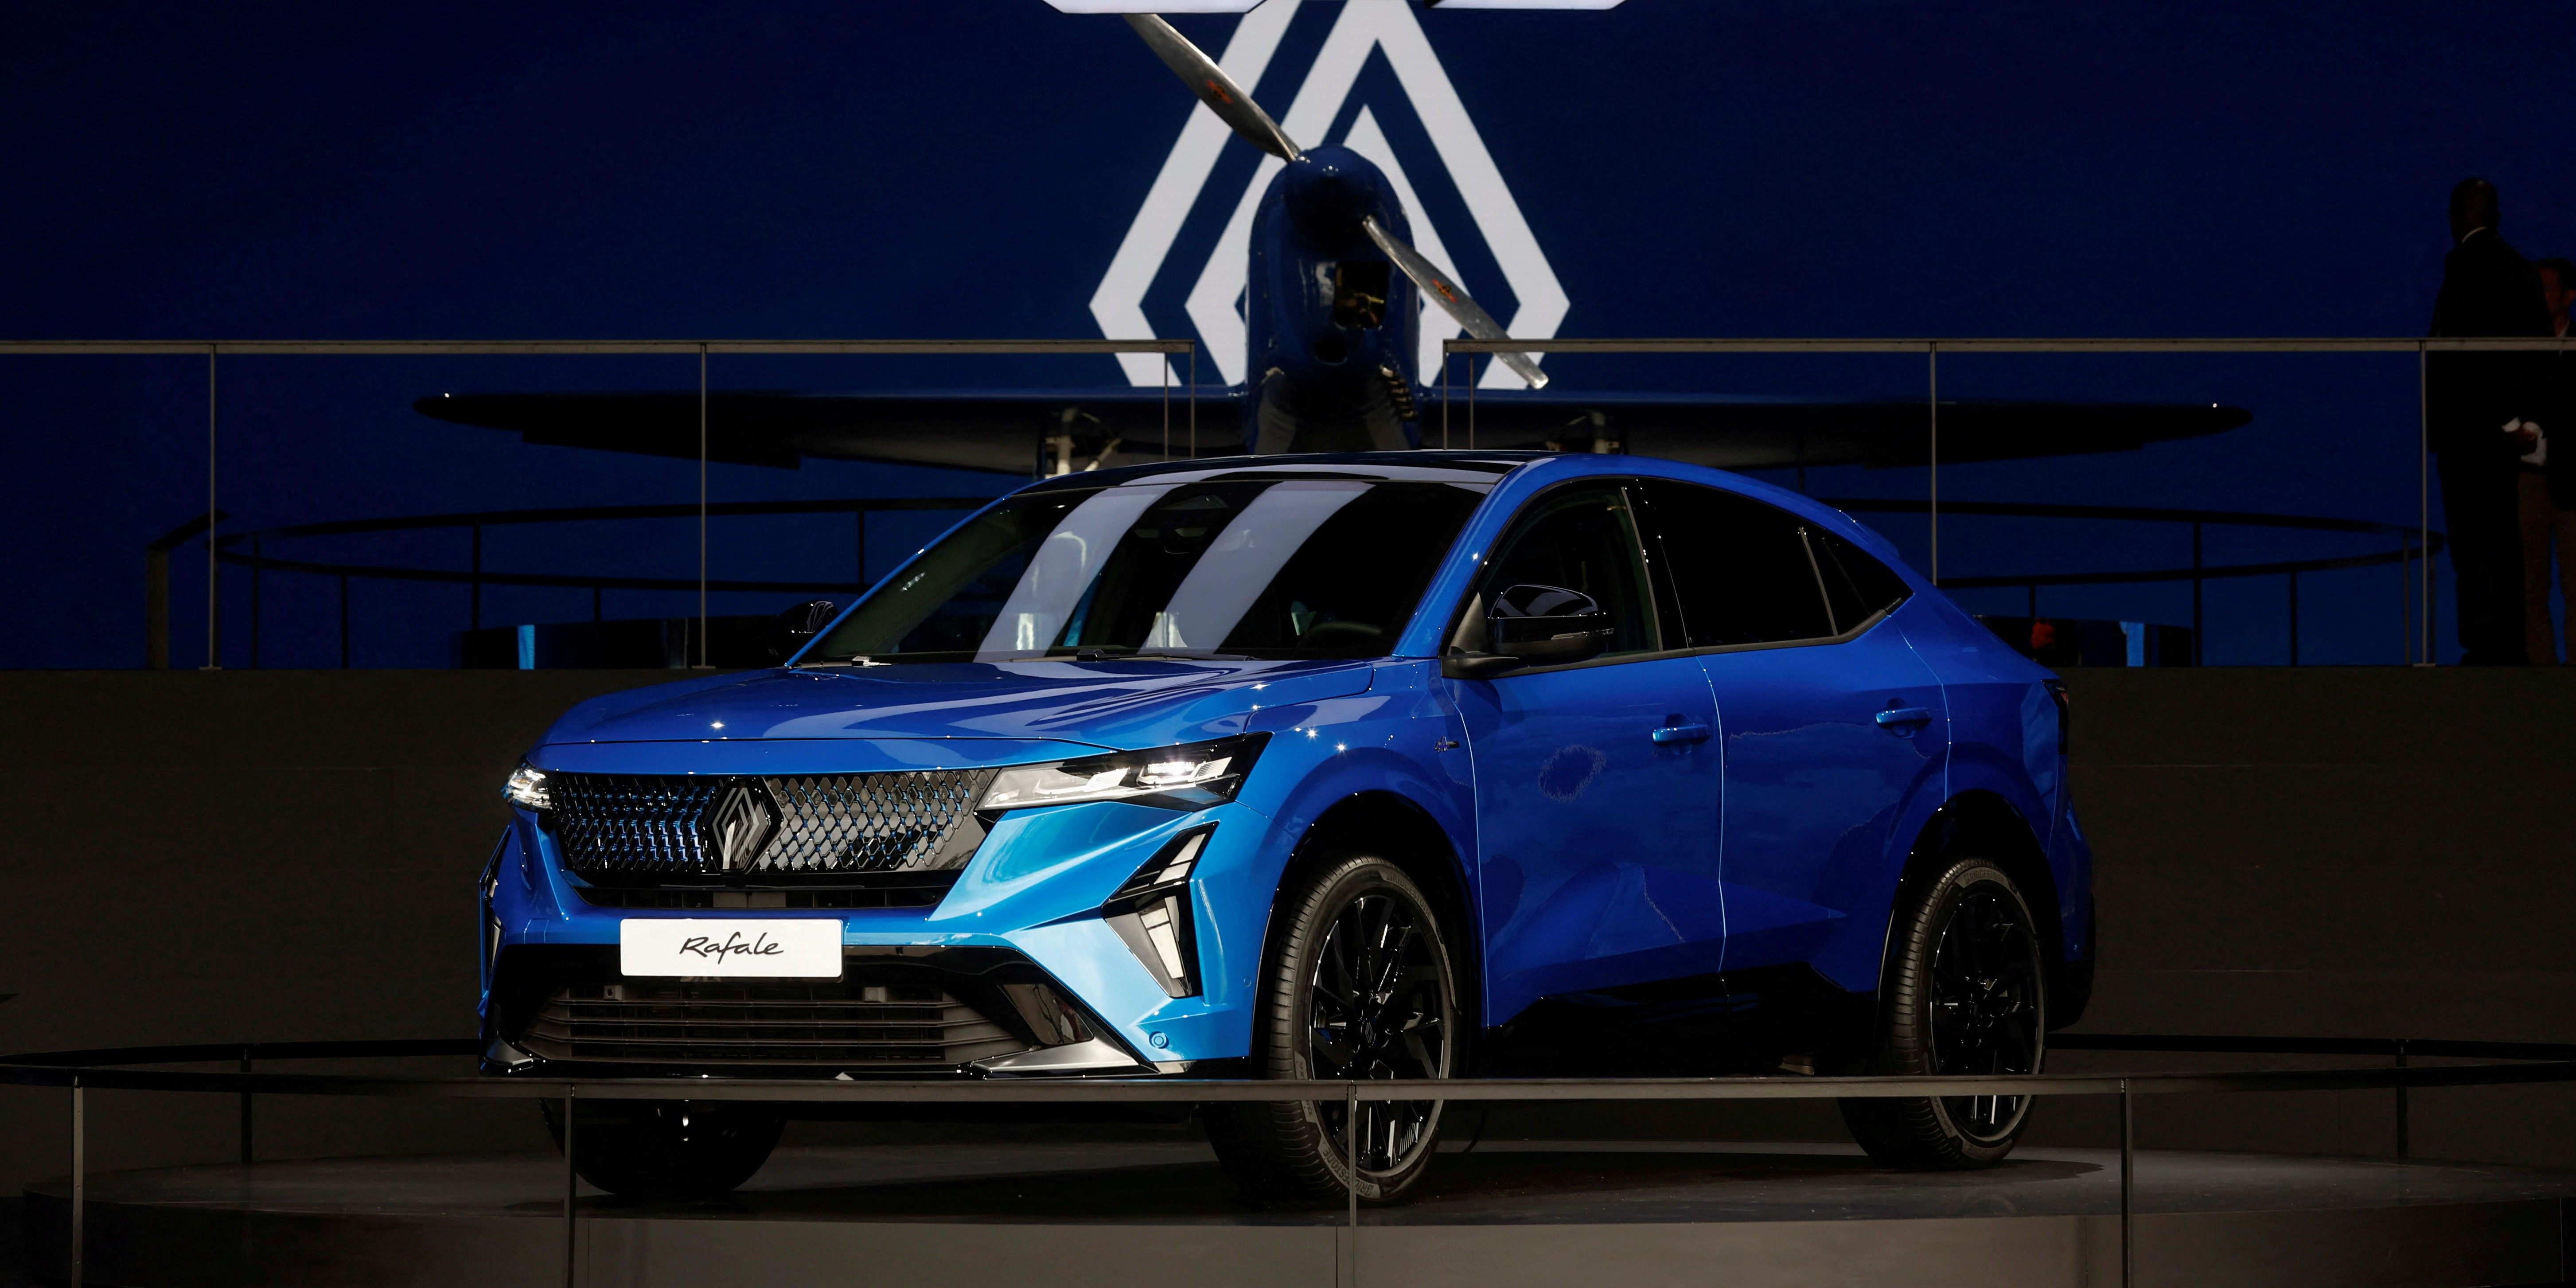 Rafale : le nouveau SUV premium de Renault veut se faire une place entre les Allemands et les Chinois